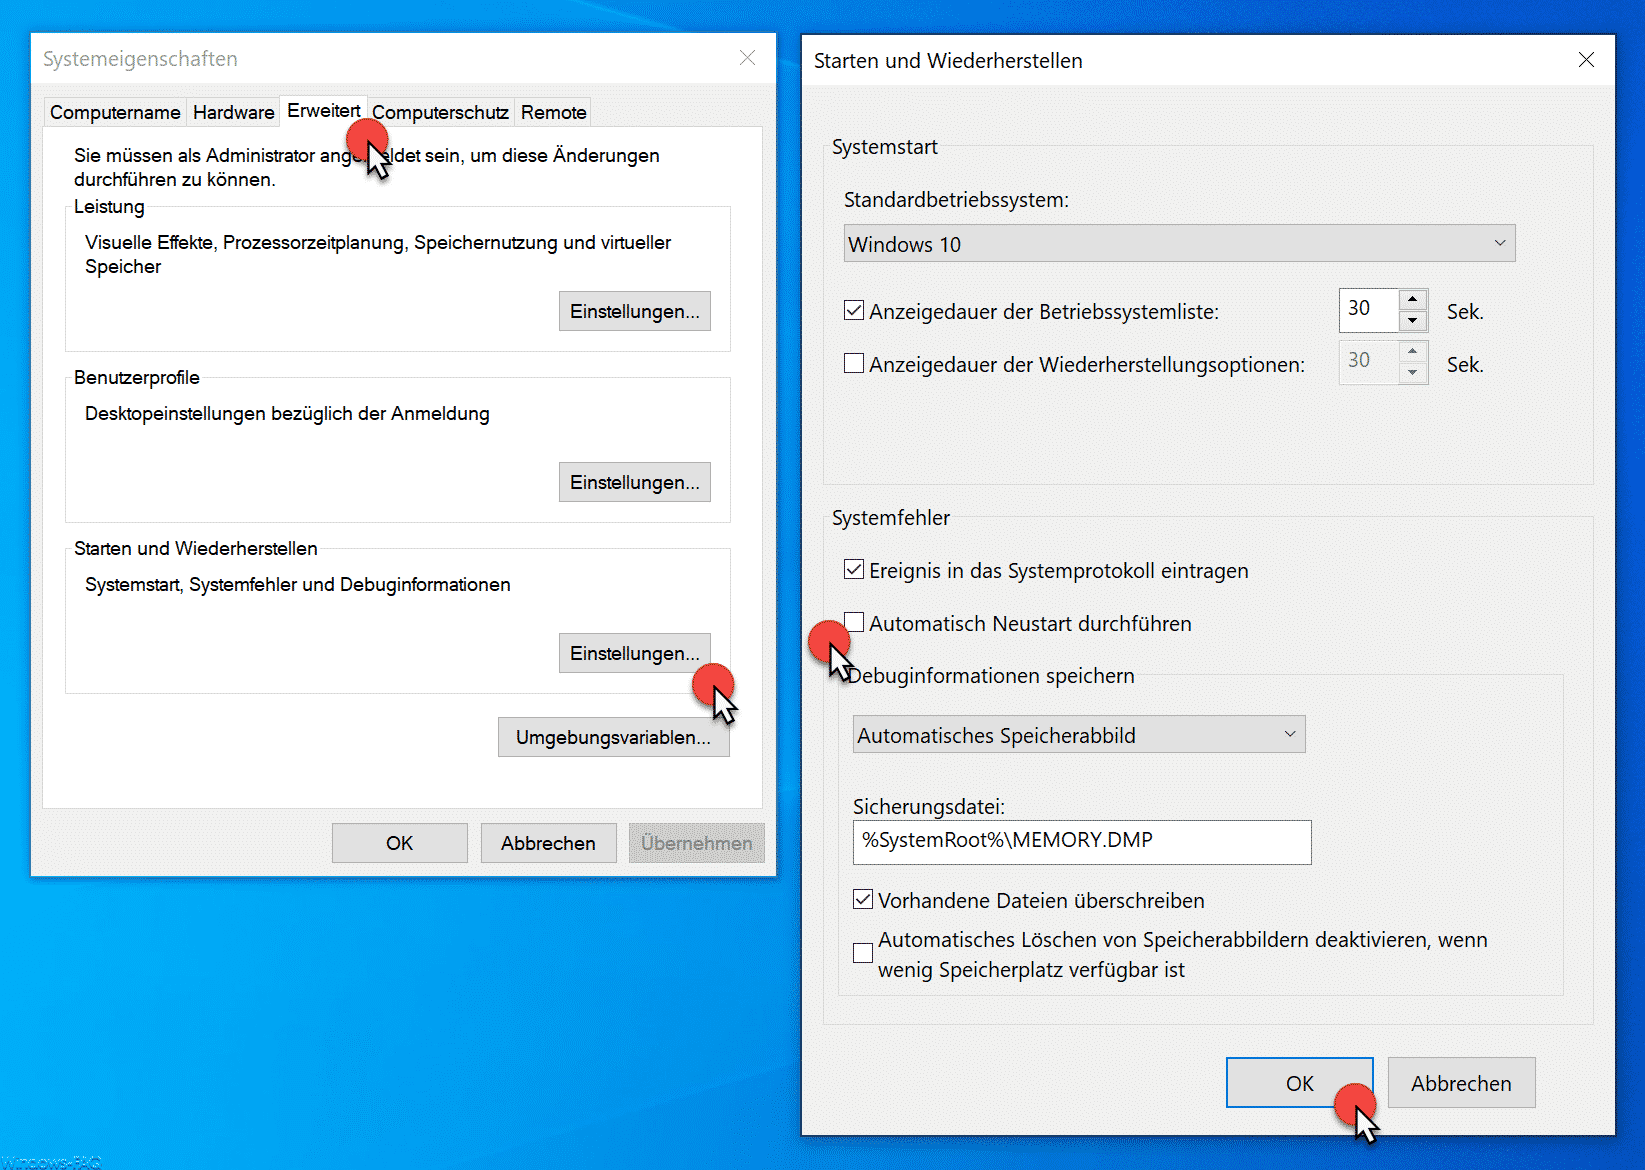 Deaktivieren Sie den automatischen Neustart: Verhindern Sie, dass der Computer automatisch neu startet, um den Bluescreen-Fehler besser untersuchen zu können.
Aktualisieren Sie das BIOS: Überprüfen Sie, ob ein BIOS-Update verfügbar ist und führen Sie es durch, um mögliche Probleme zu beheben.